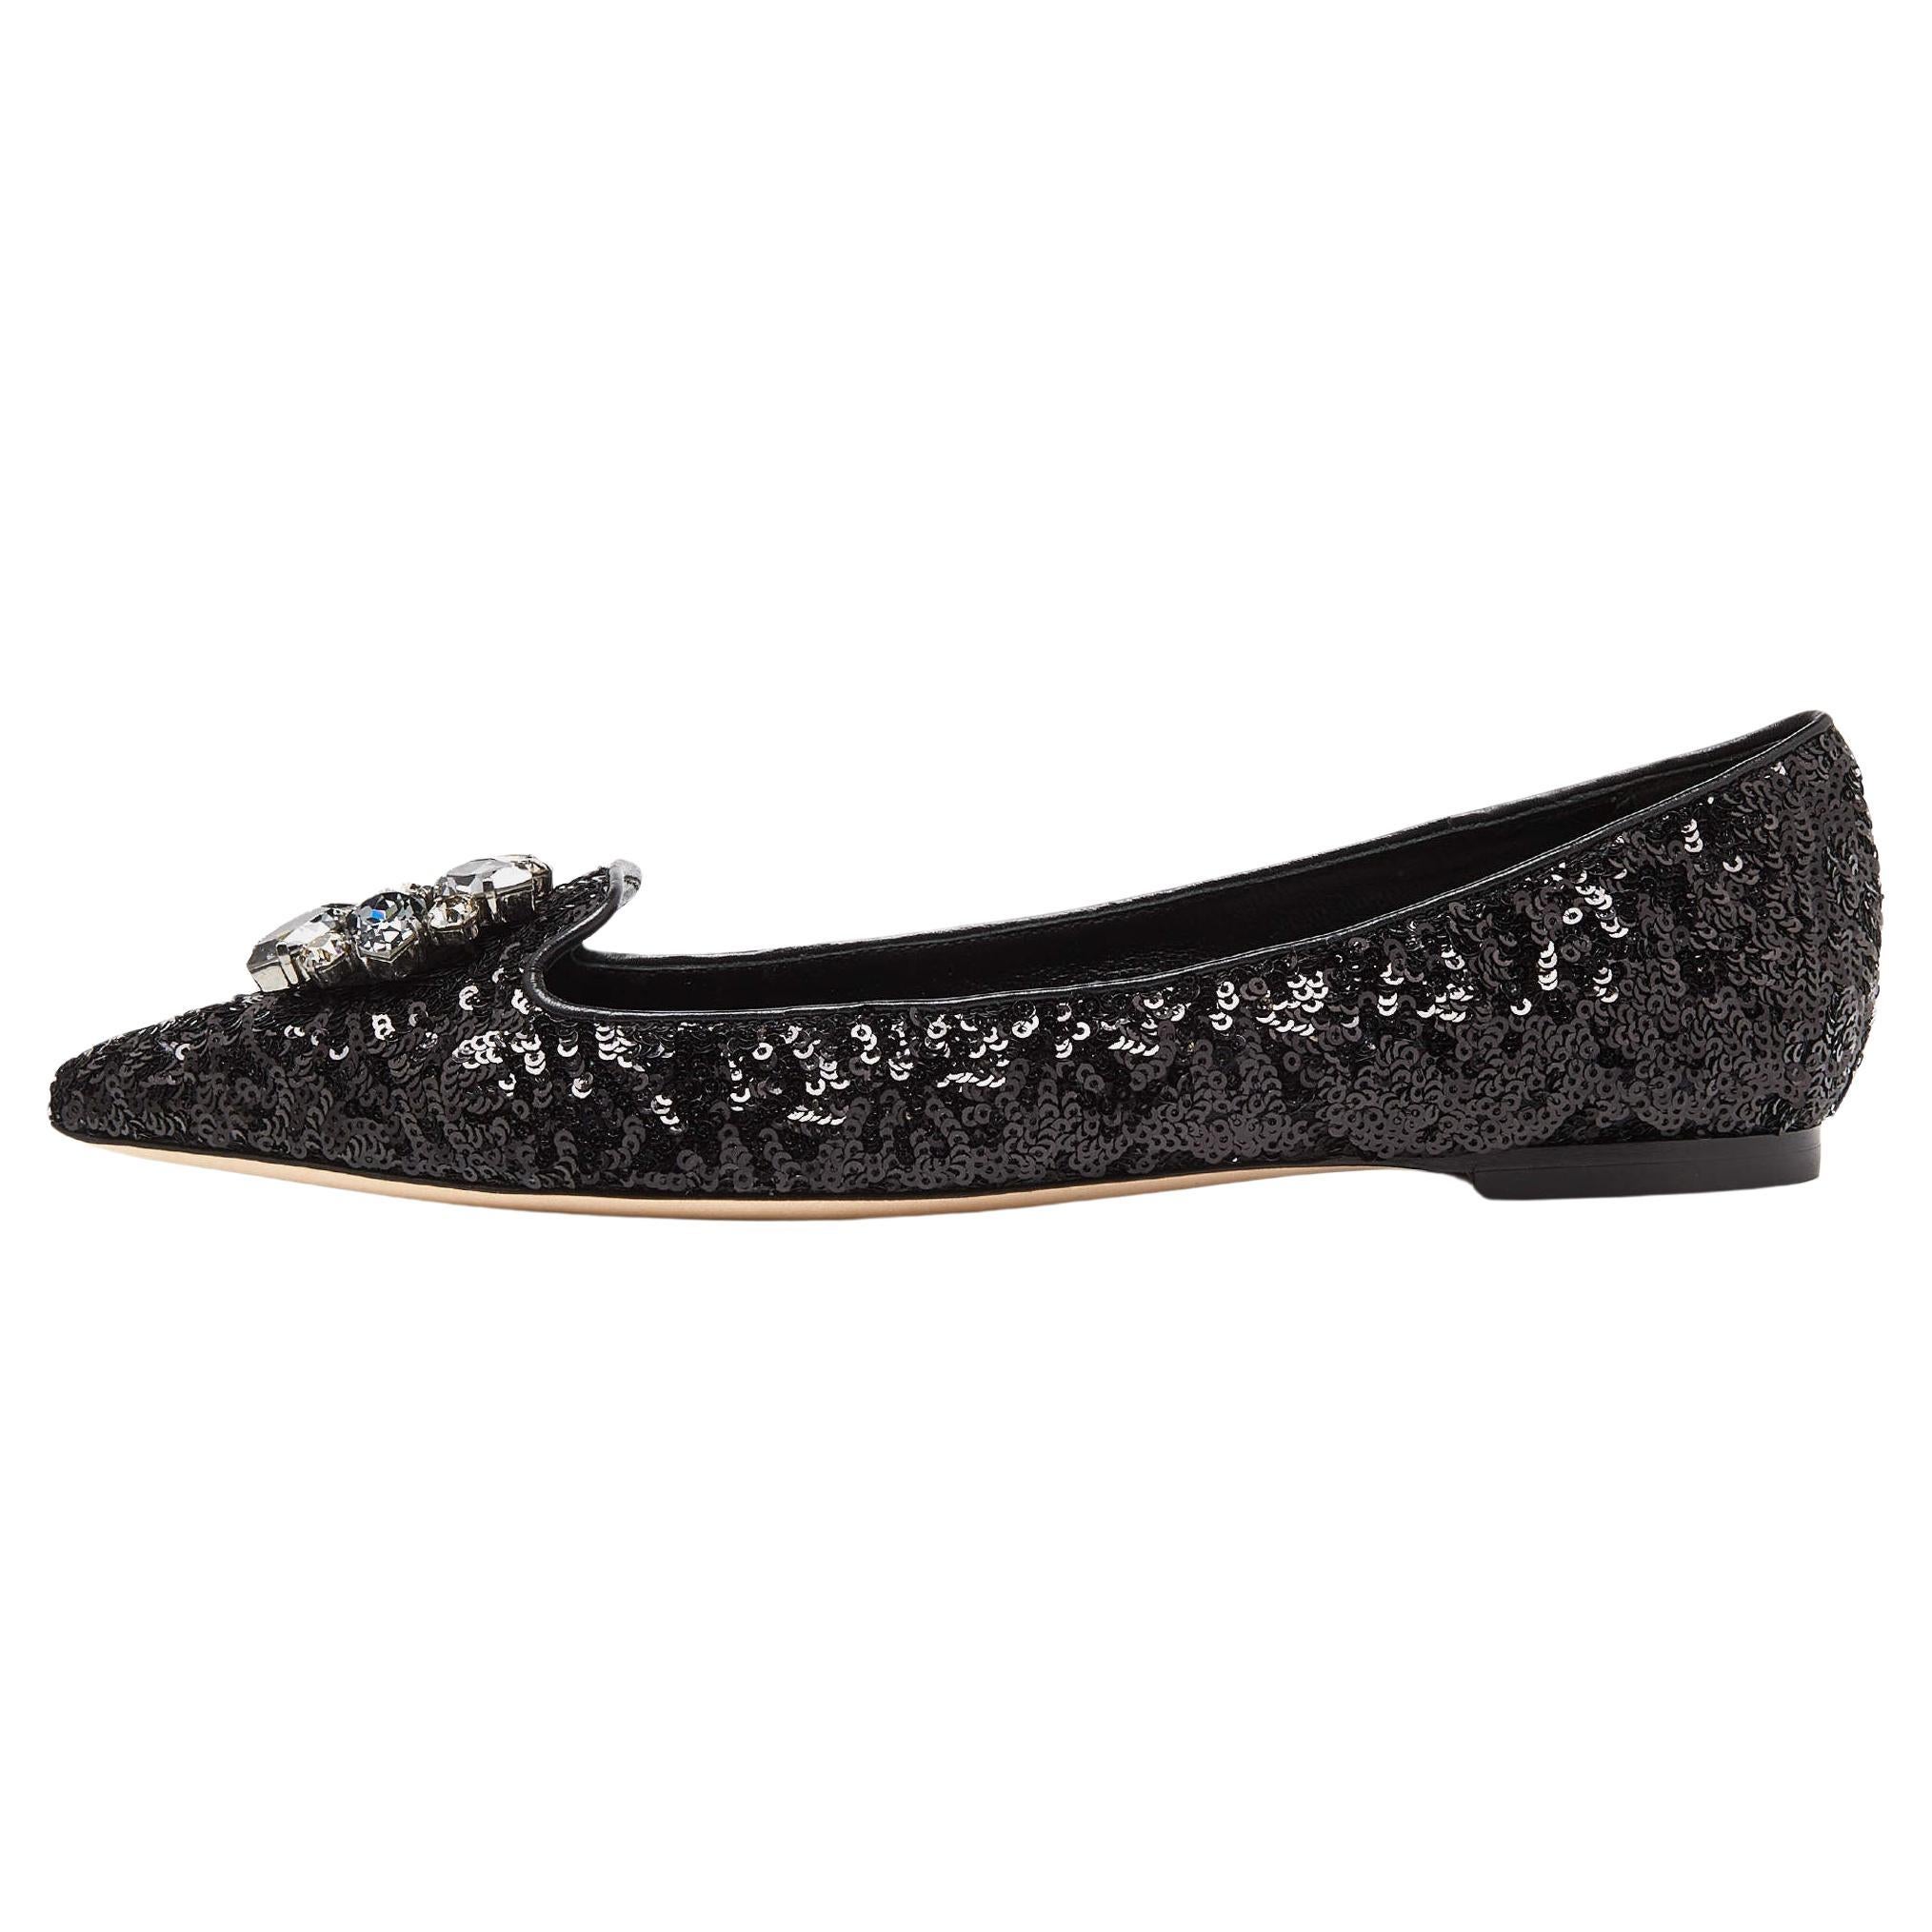 Dolce & Gabbana Black Sequins Crystal Embellished Ballet Flats Size 38.5